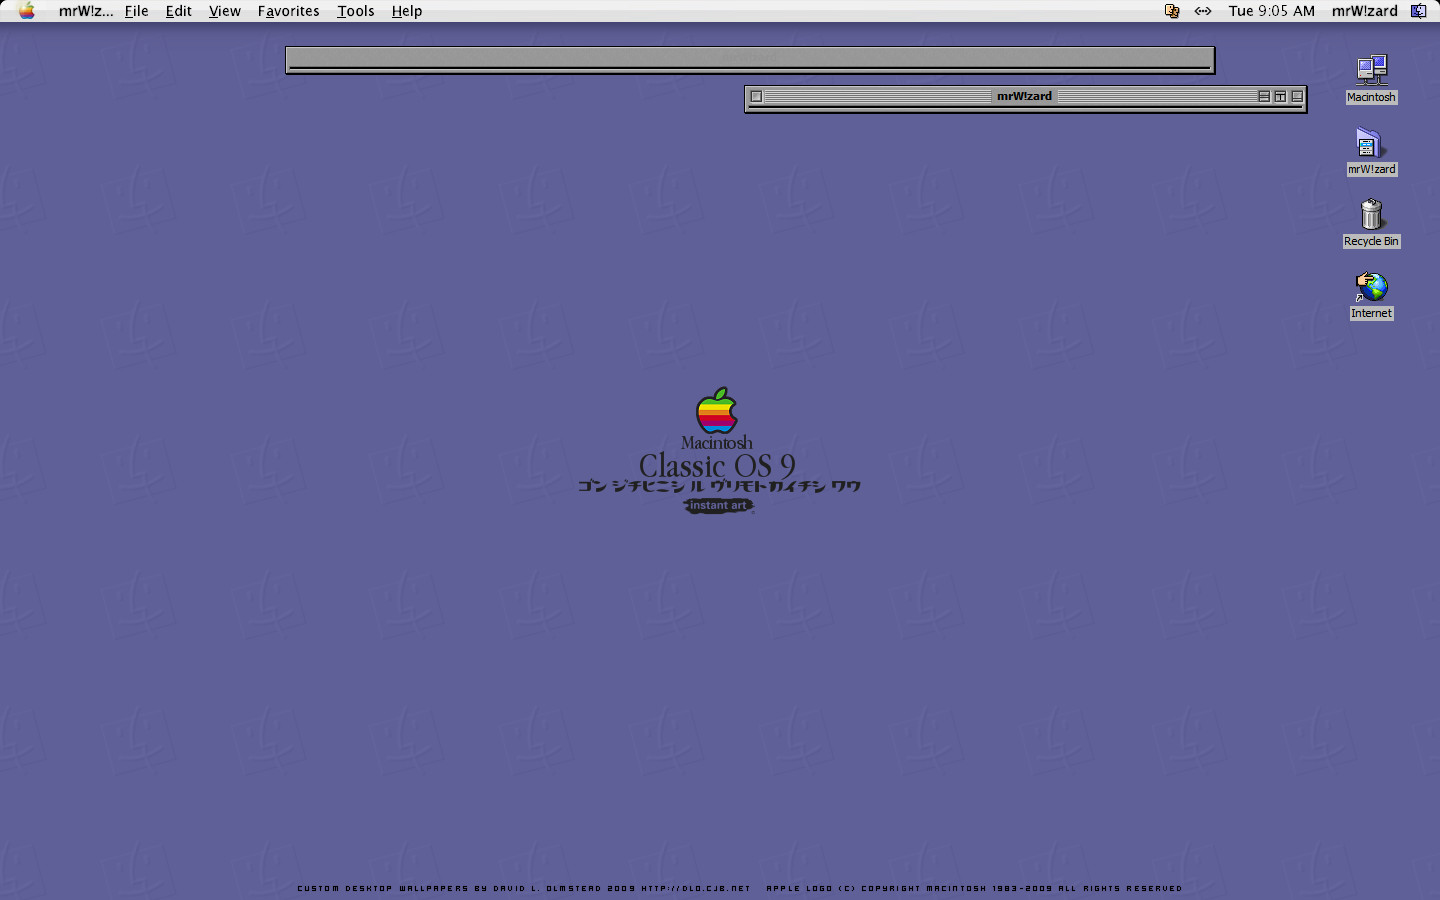 Tải miễn phí hình nền Classic Mac OS 9.3: Không phải ai cũng có cơ hội trải nghiệm những hình nền độc đáo của Classic Mac OS 9.3, nhưng hiện nay bạn có thể tải miễn phí bộ sưu tập hình nền này ngay trên thiết bị của mình. Chất lượng hình ảnh cực kỳ sắc nét, giúp tạo nên không gian làm việc đạt đến độ tinh tế và chuyên nghiệp nhất.